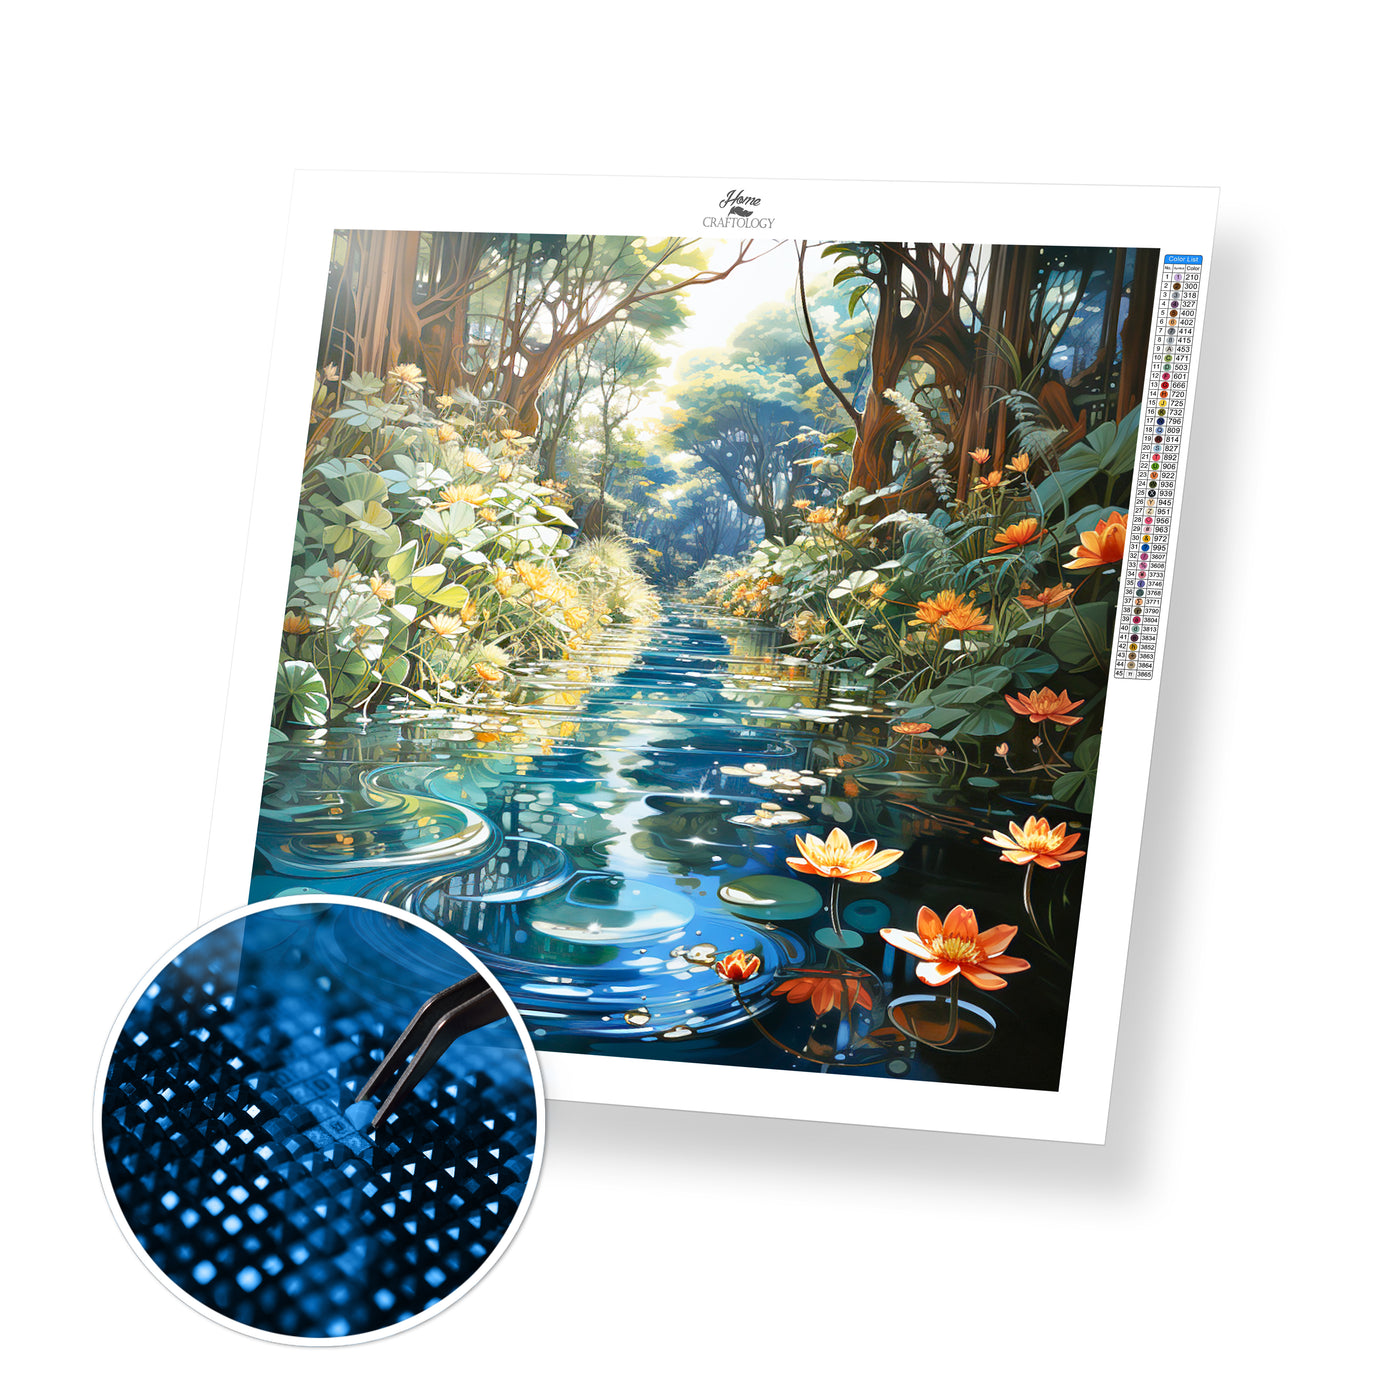 New! Pond with Flowers - Premium Diamond Painting Kit